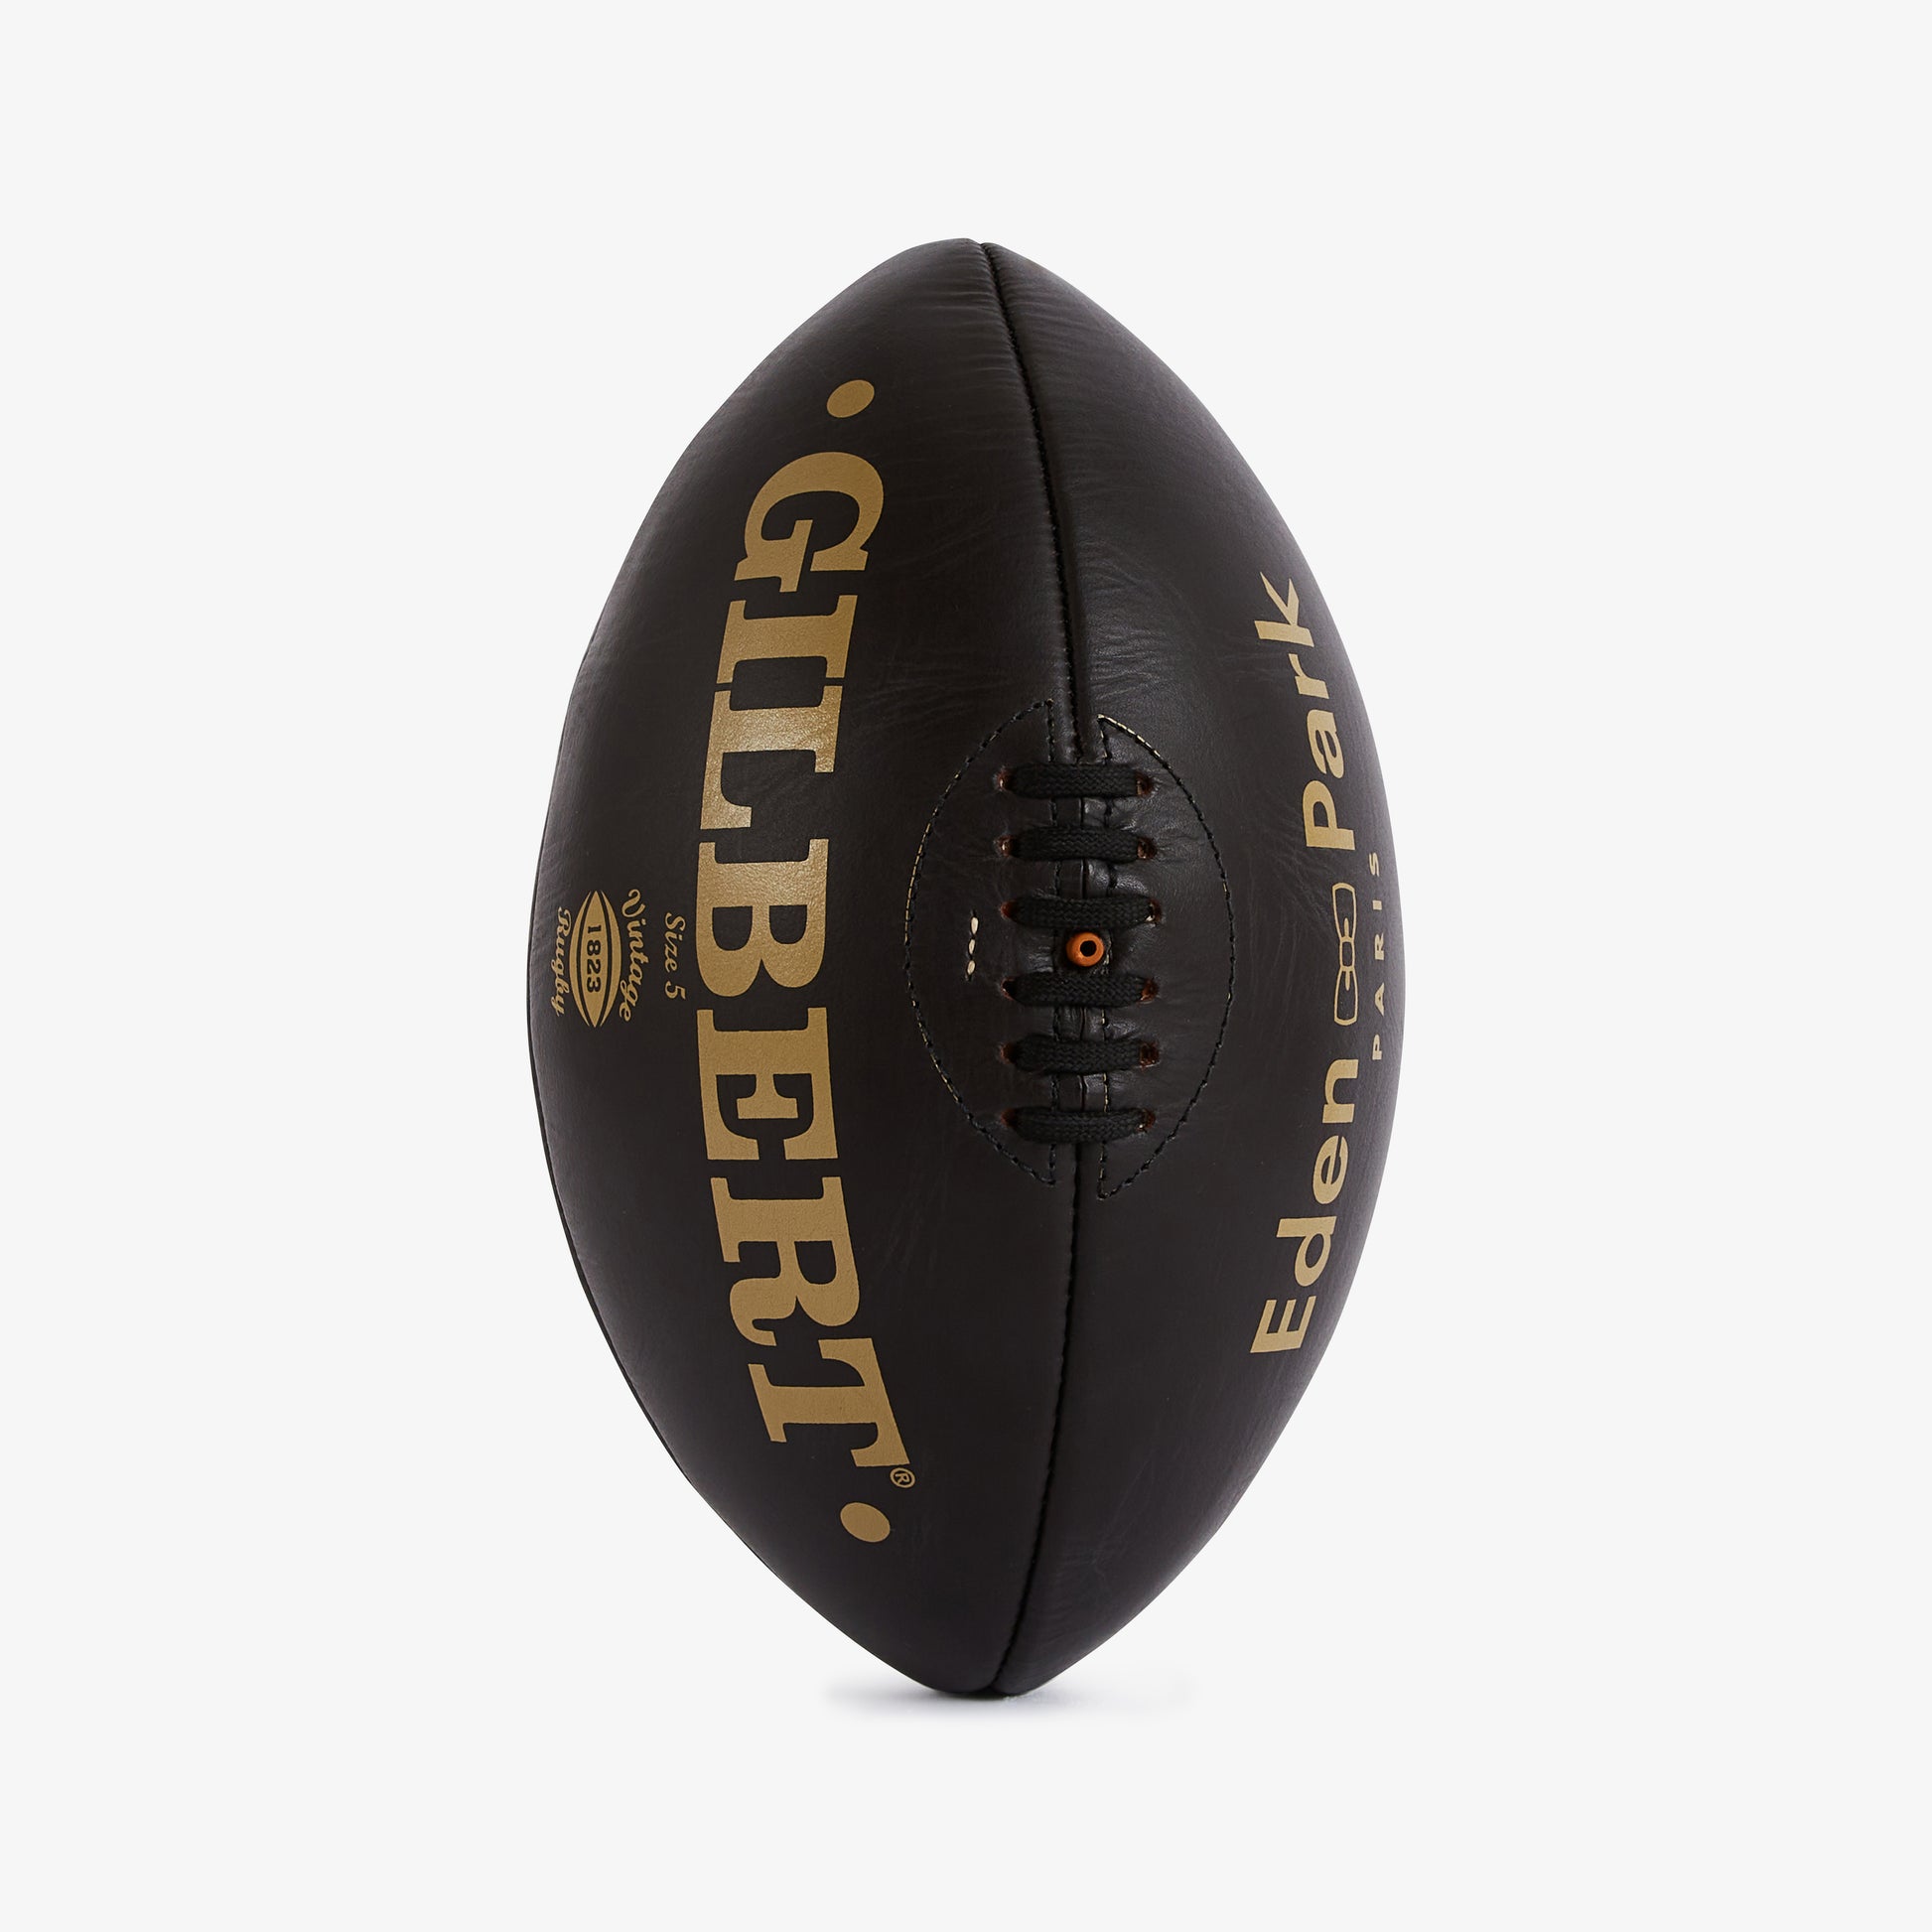 Ballon de rugby marron – Eden Park